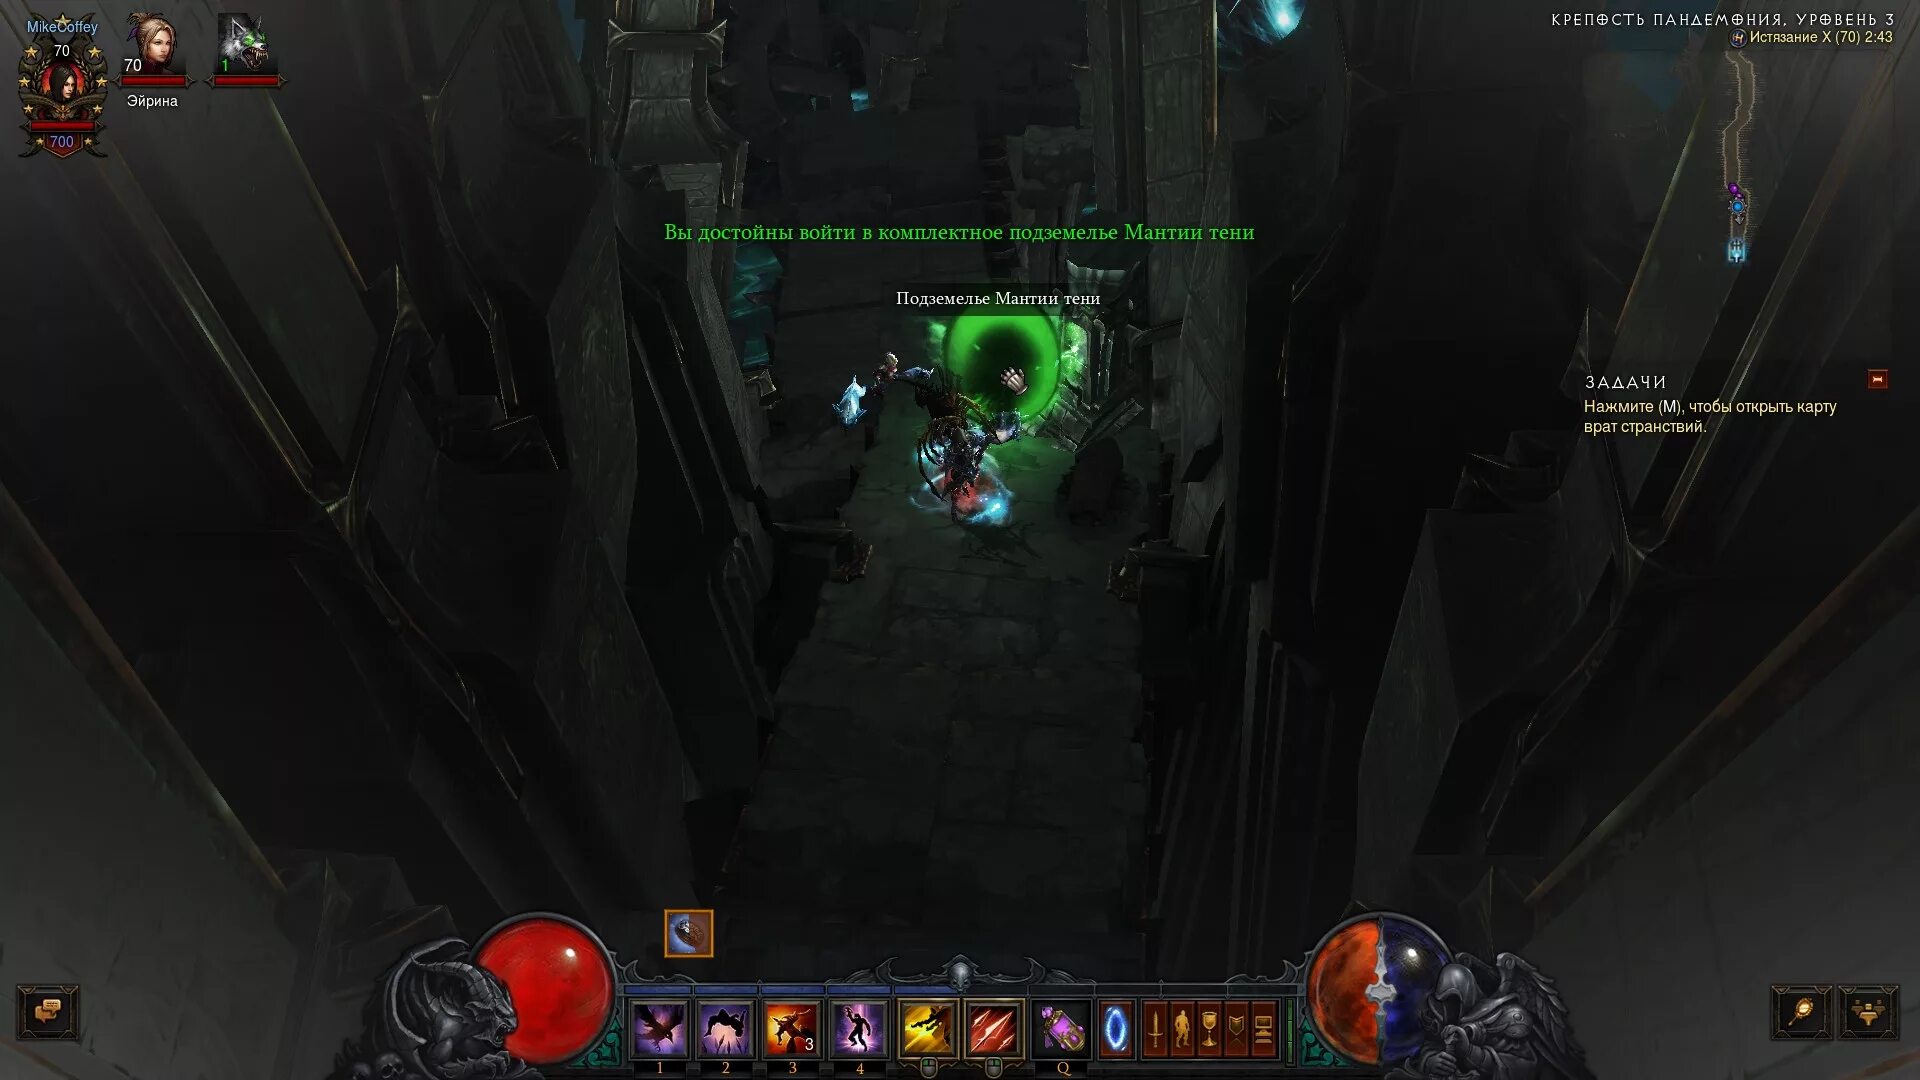 Комплектное подземелье Diablo 3. Комплектное подземелье Diablo 3 монах. Комплектное подземелье Diablo 3 шестерни мертвых земель. Диабло 3 древний водосток в Далгурском оазисе карта.